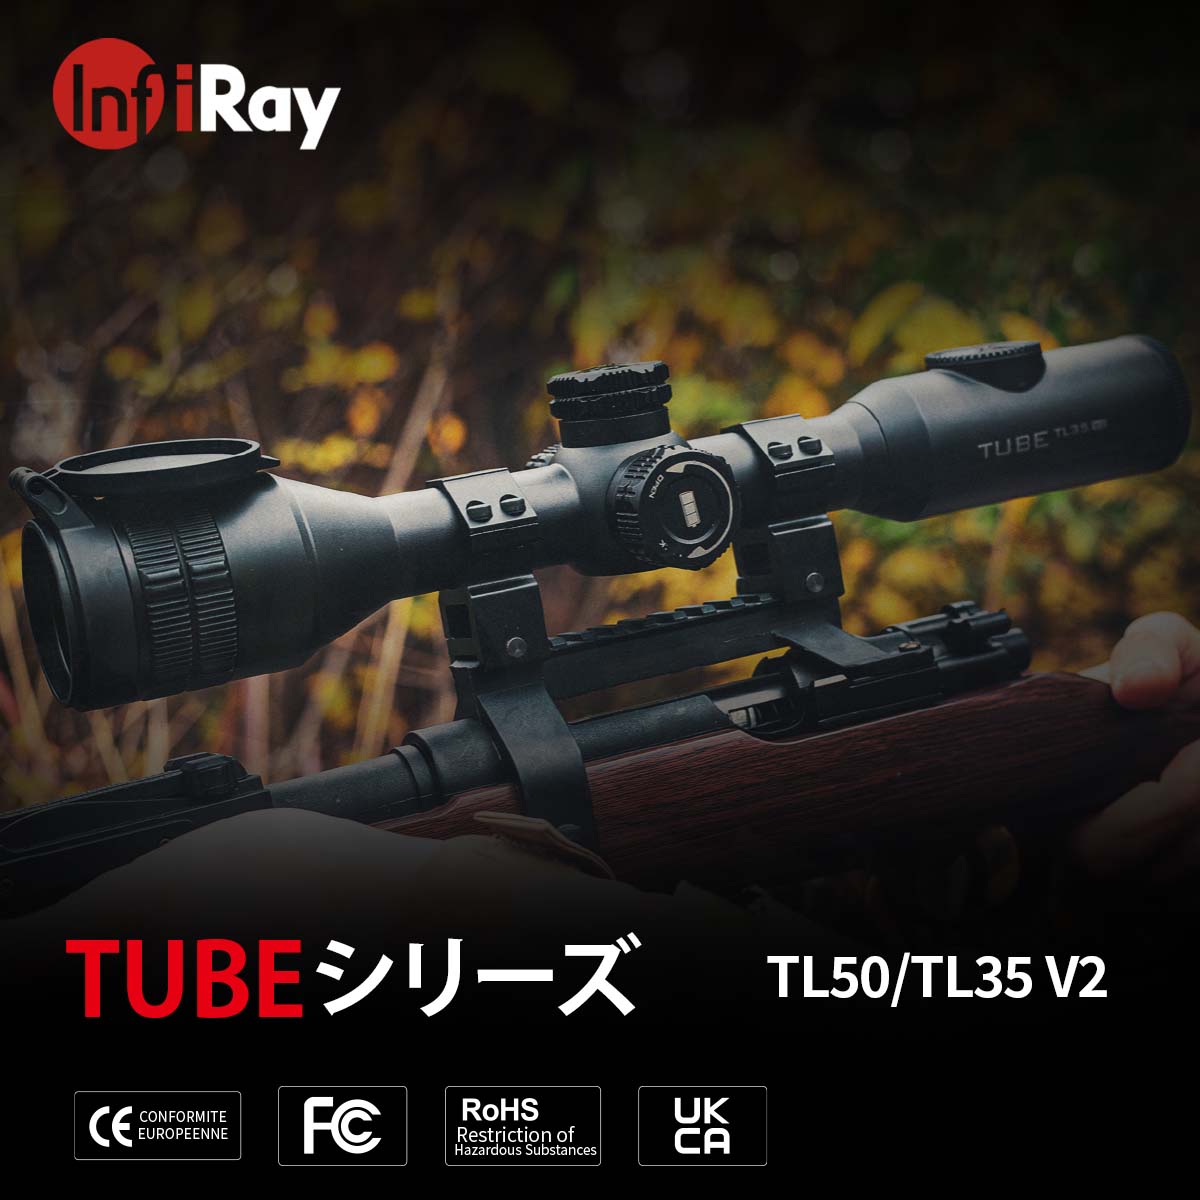 IRAY サーマルイメージングライフスコープ TUBEシリーズ TL50 光学機器,暗視スコープ タイムテクノロジー公式ショップ